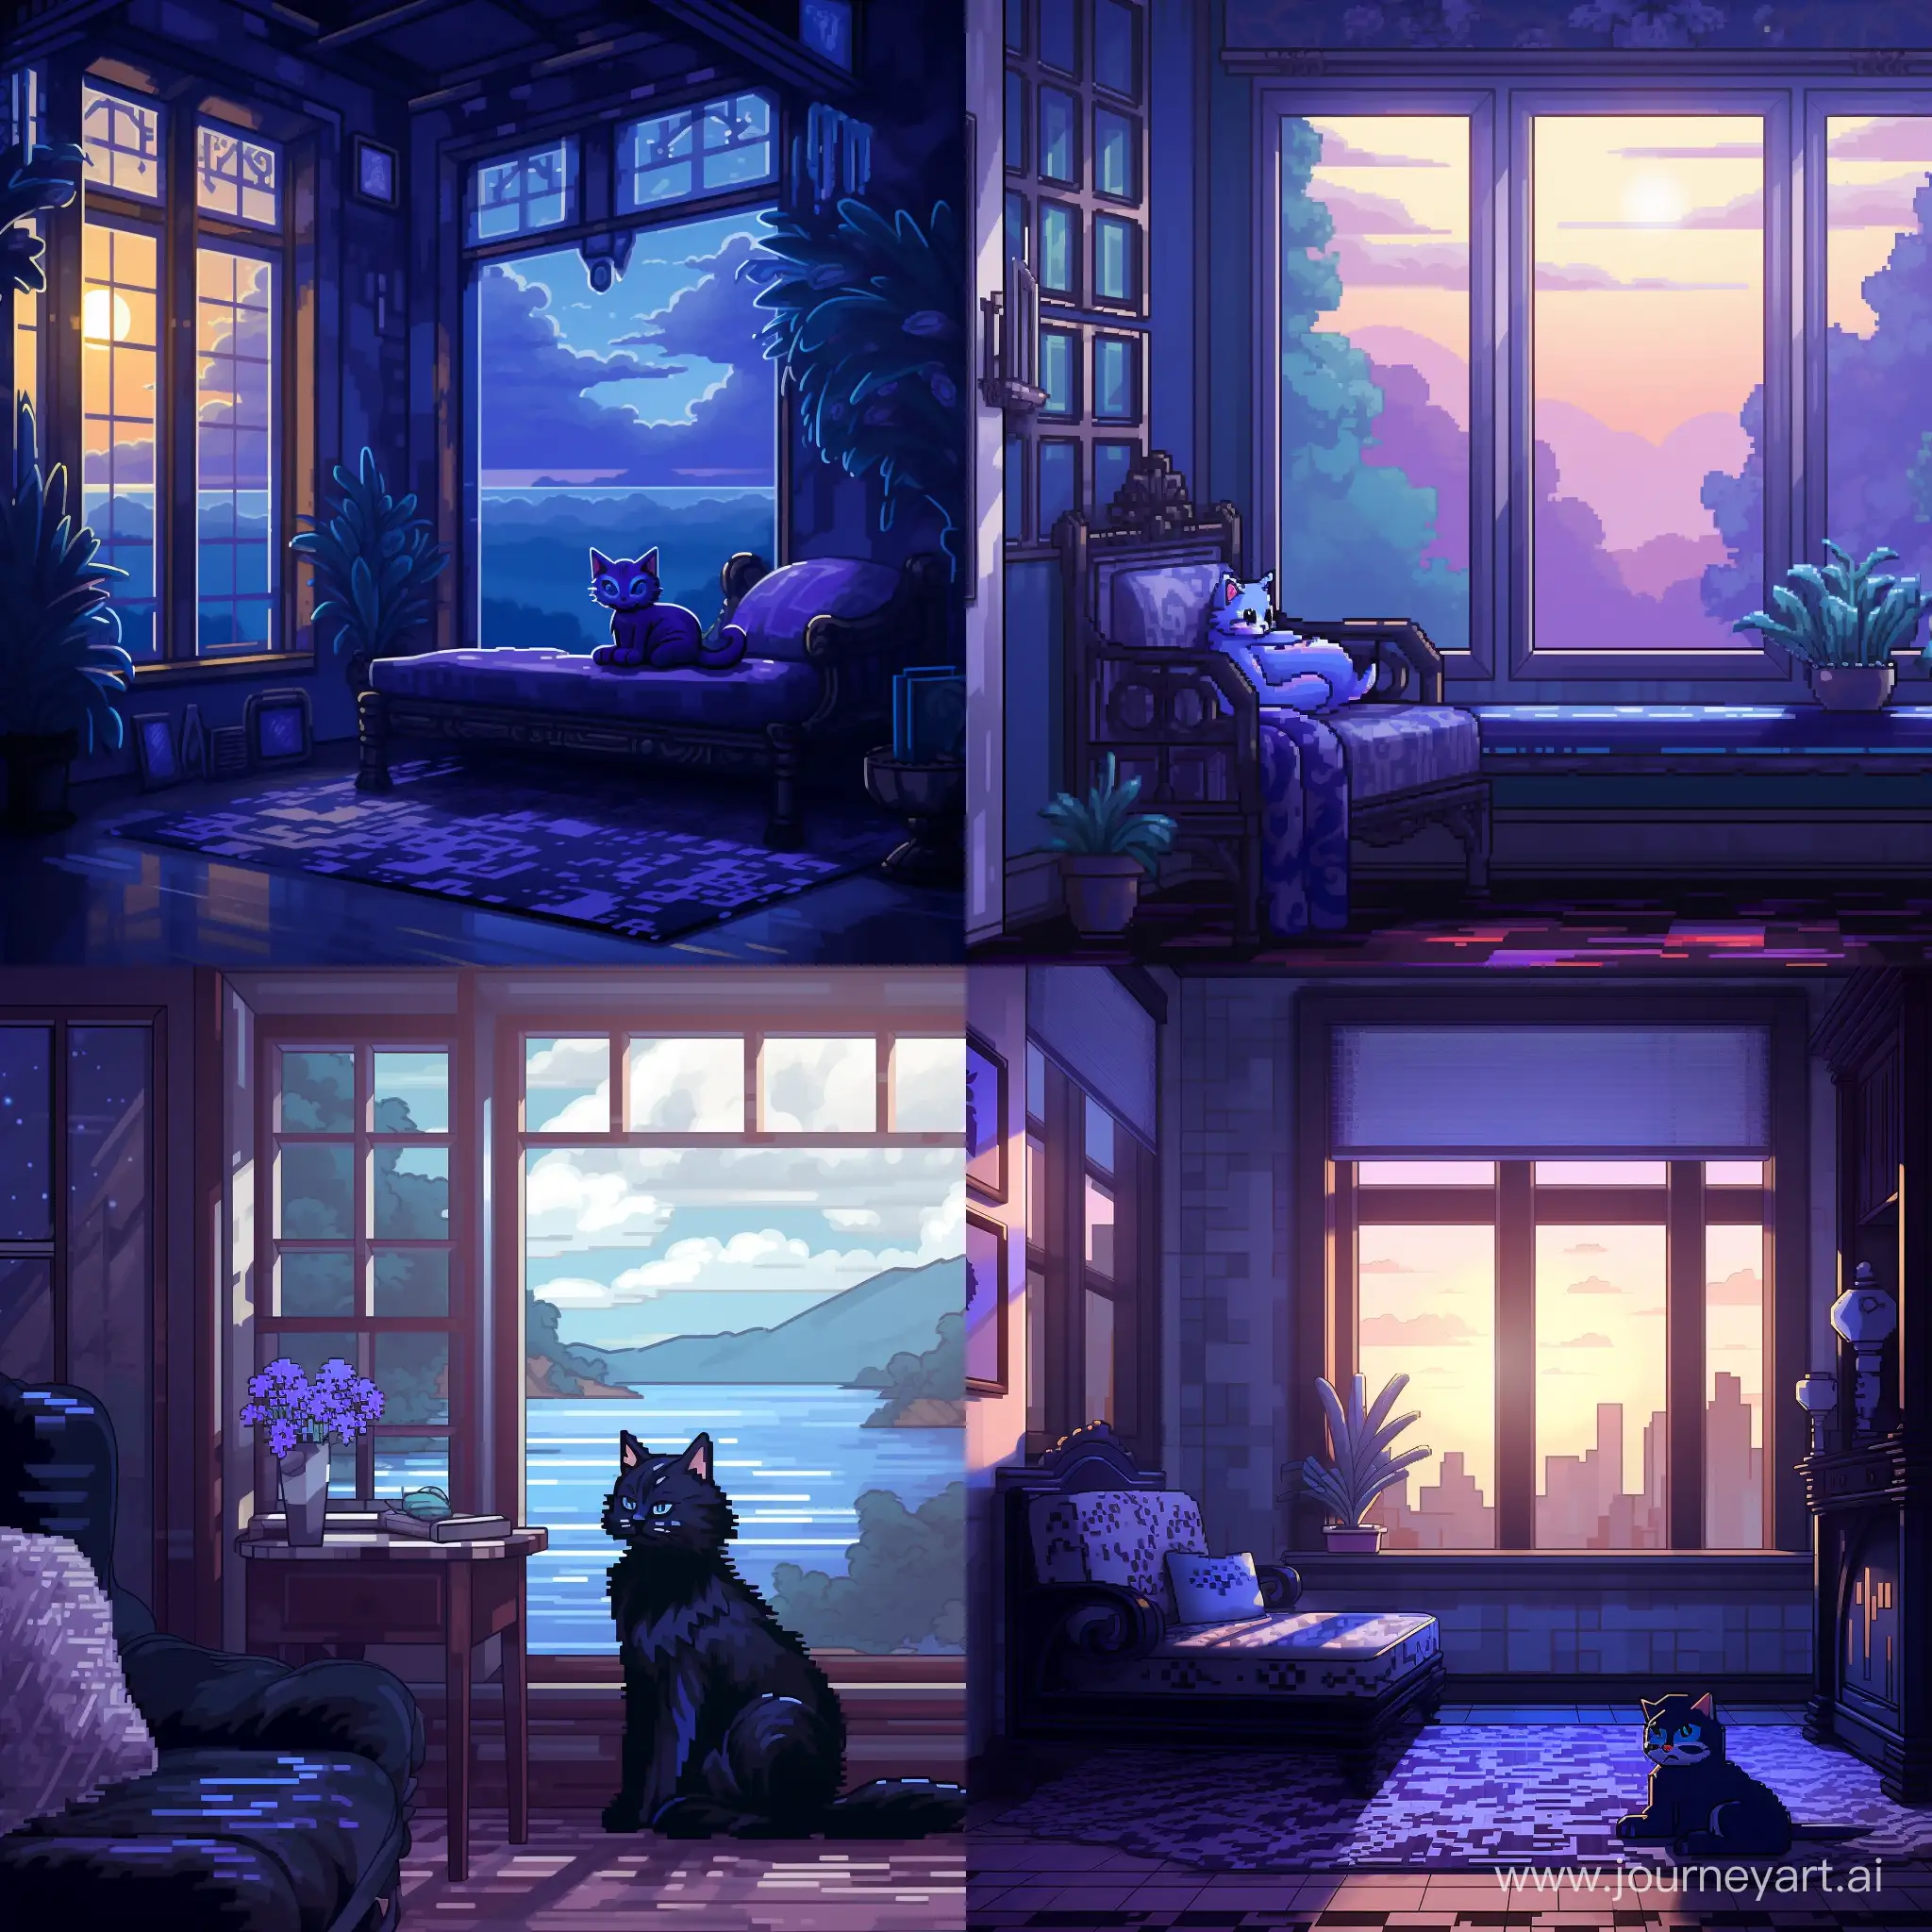 32 бита пиксель арт, голубая кошка с черными узорами лениво разлеглась на фоне окна, мягкий свет проникает через окна отбрасывая блики на кошку